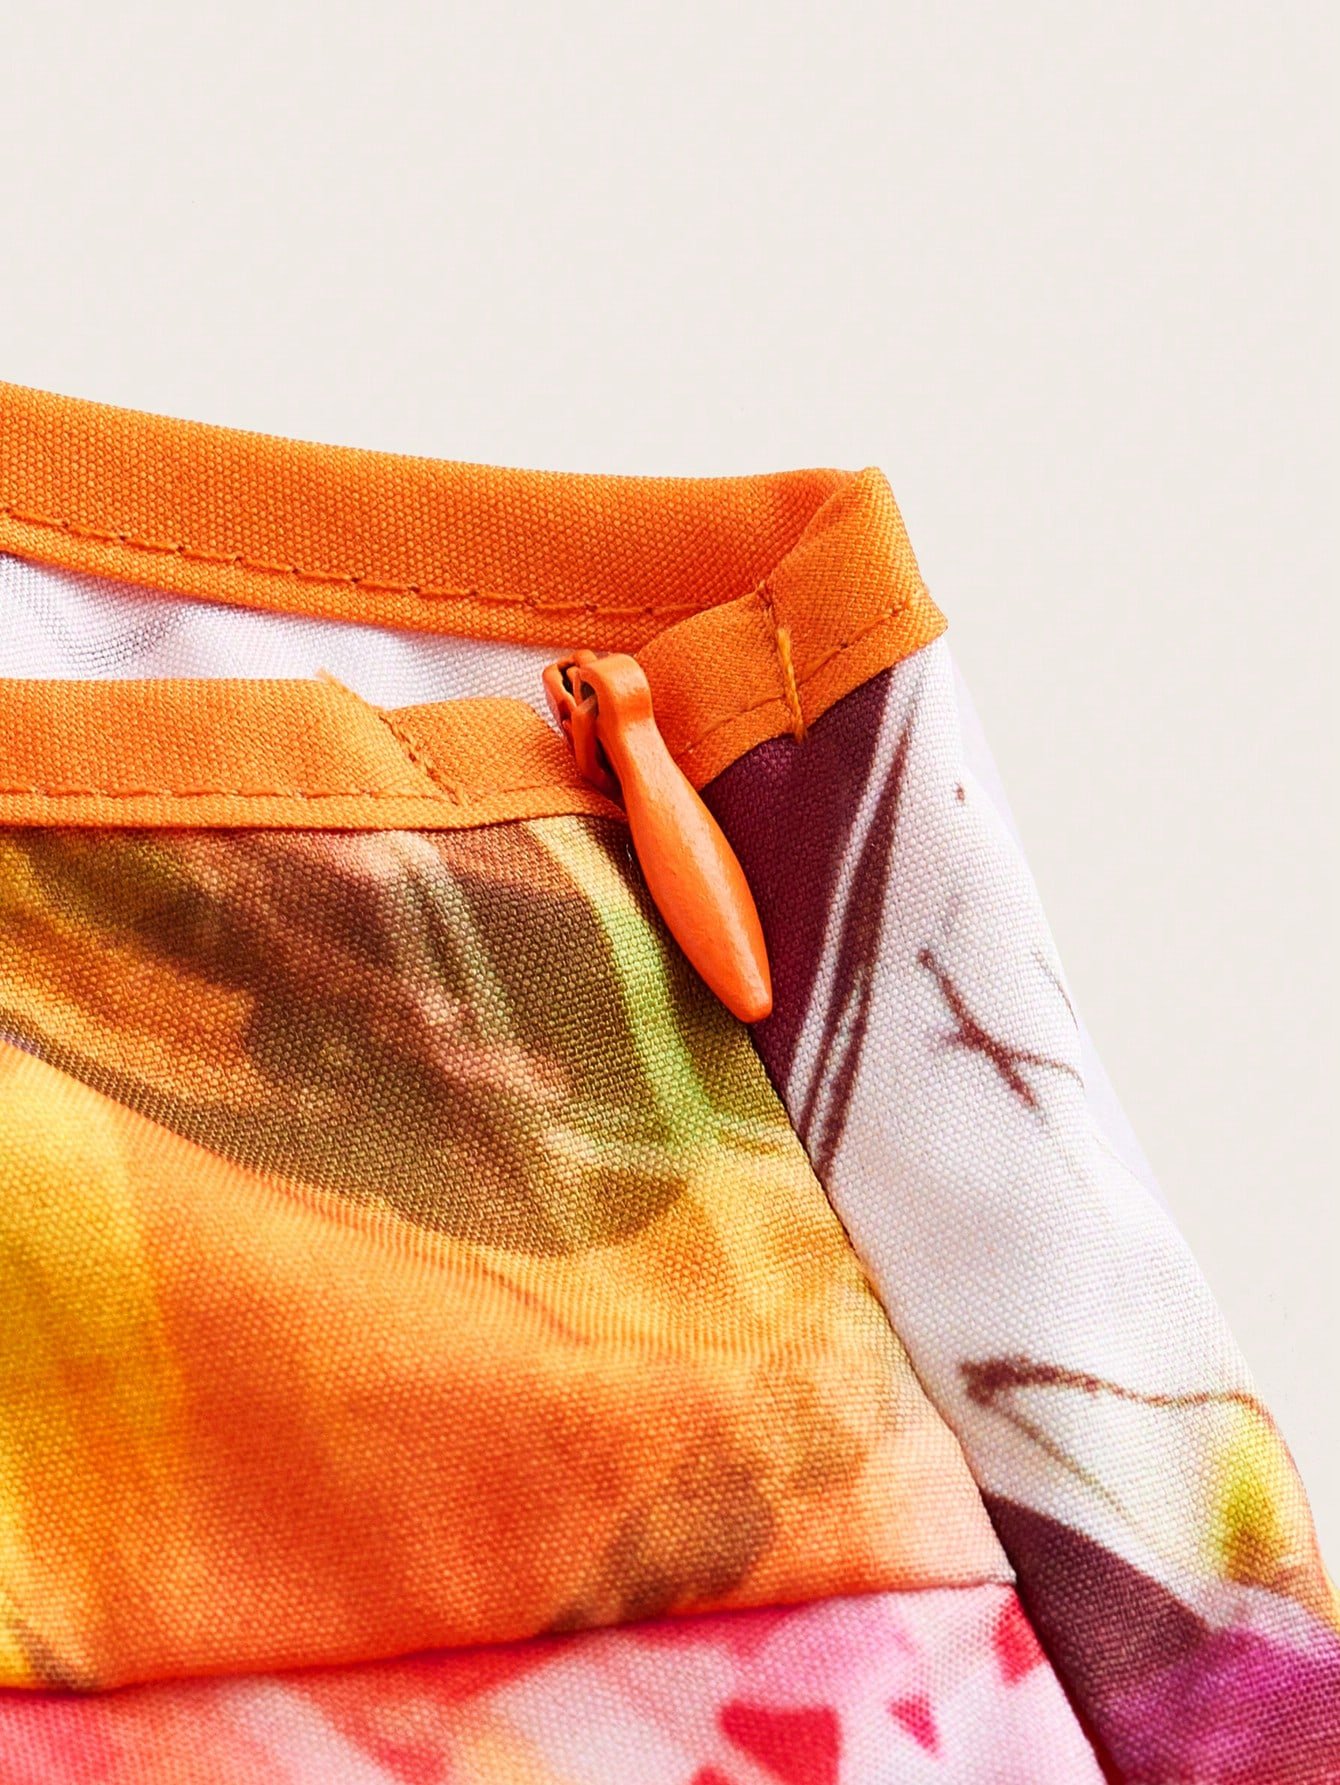 ドーパミン女性用夏スカート グラフィティデザインのカミソールドレス